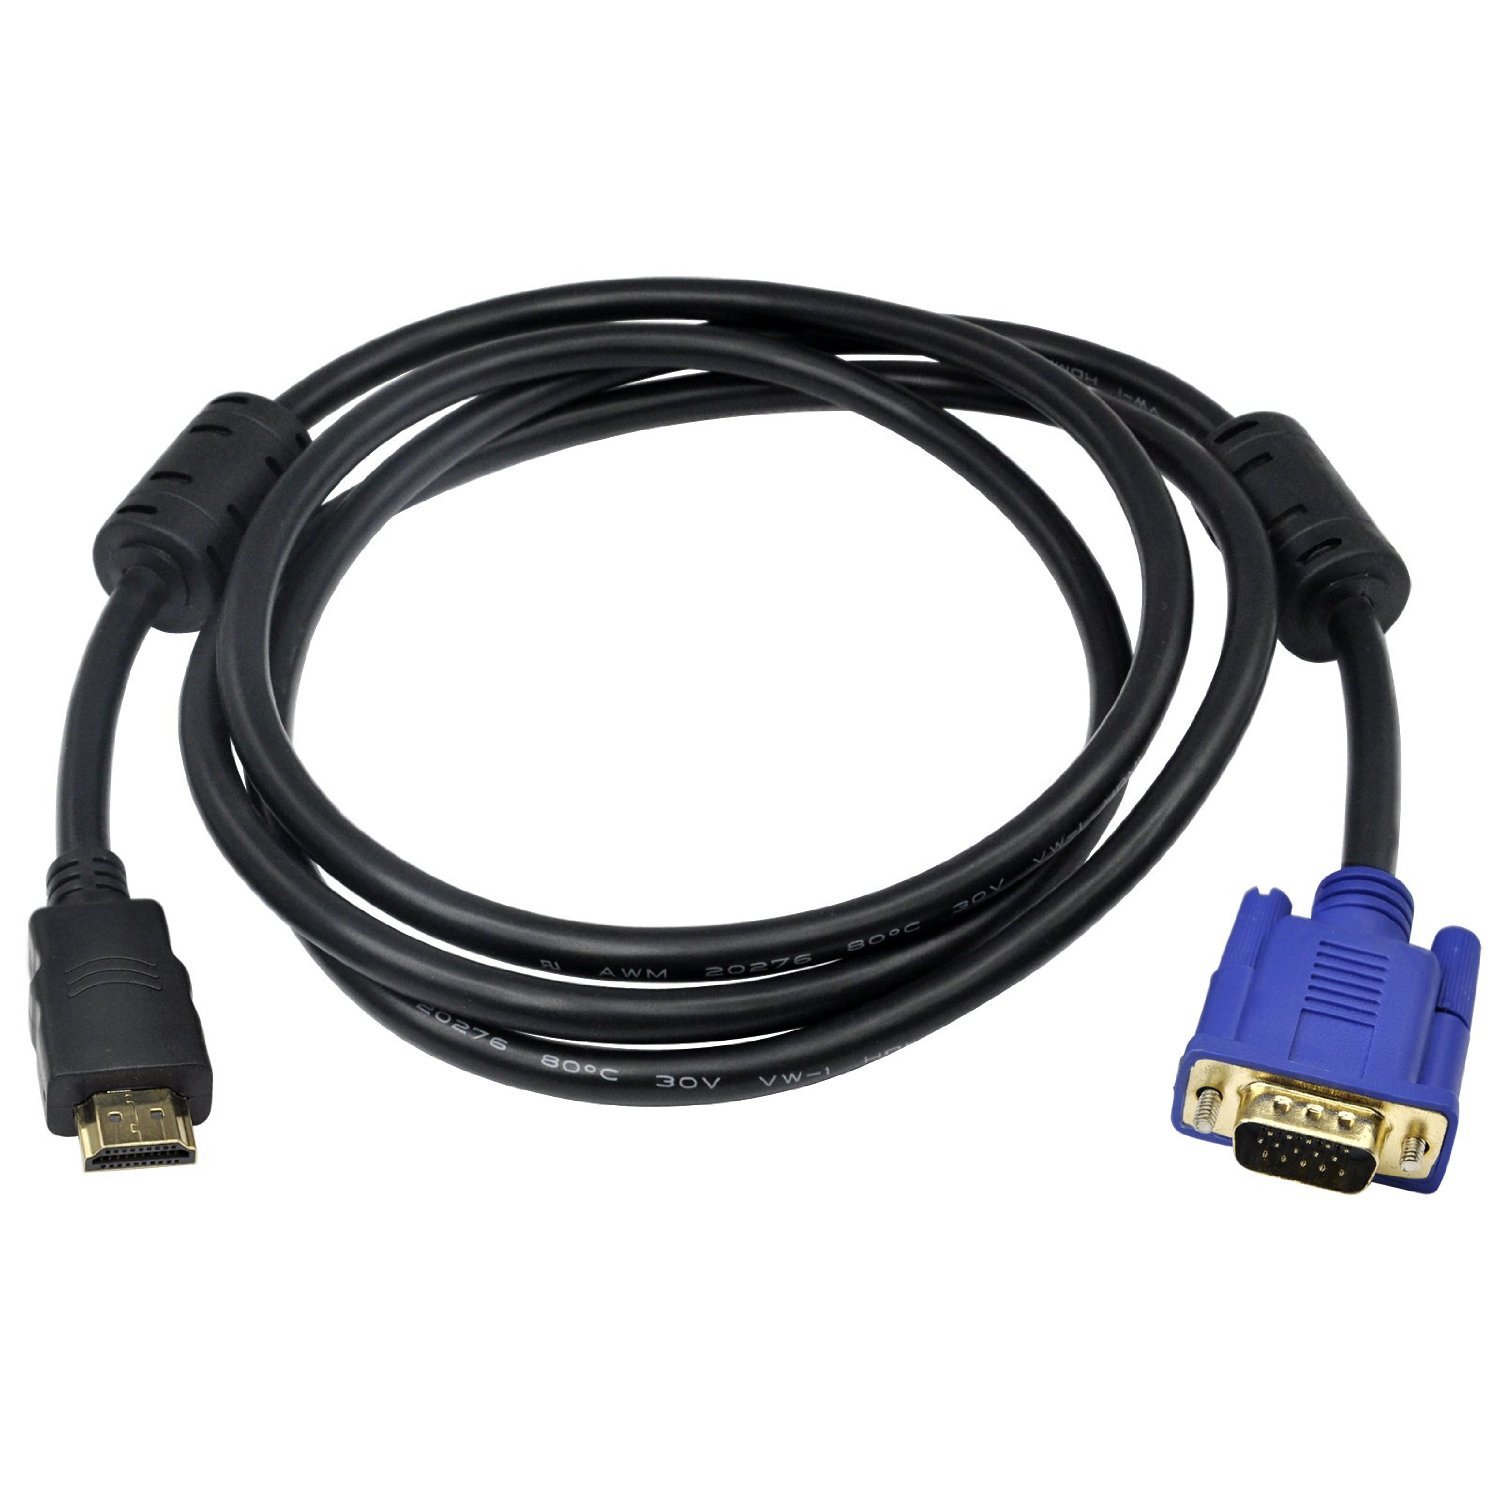 menu Latter lort HDMI per VGA verbinden: So geht's mit Adapter und Konverter